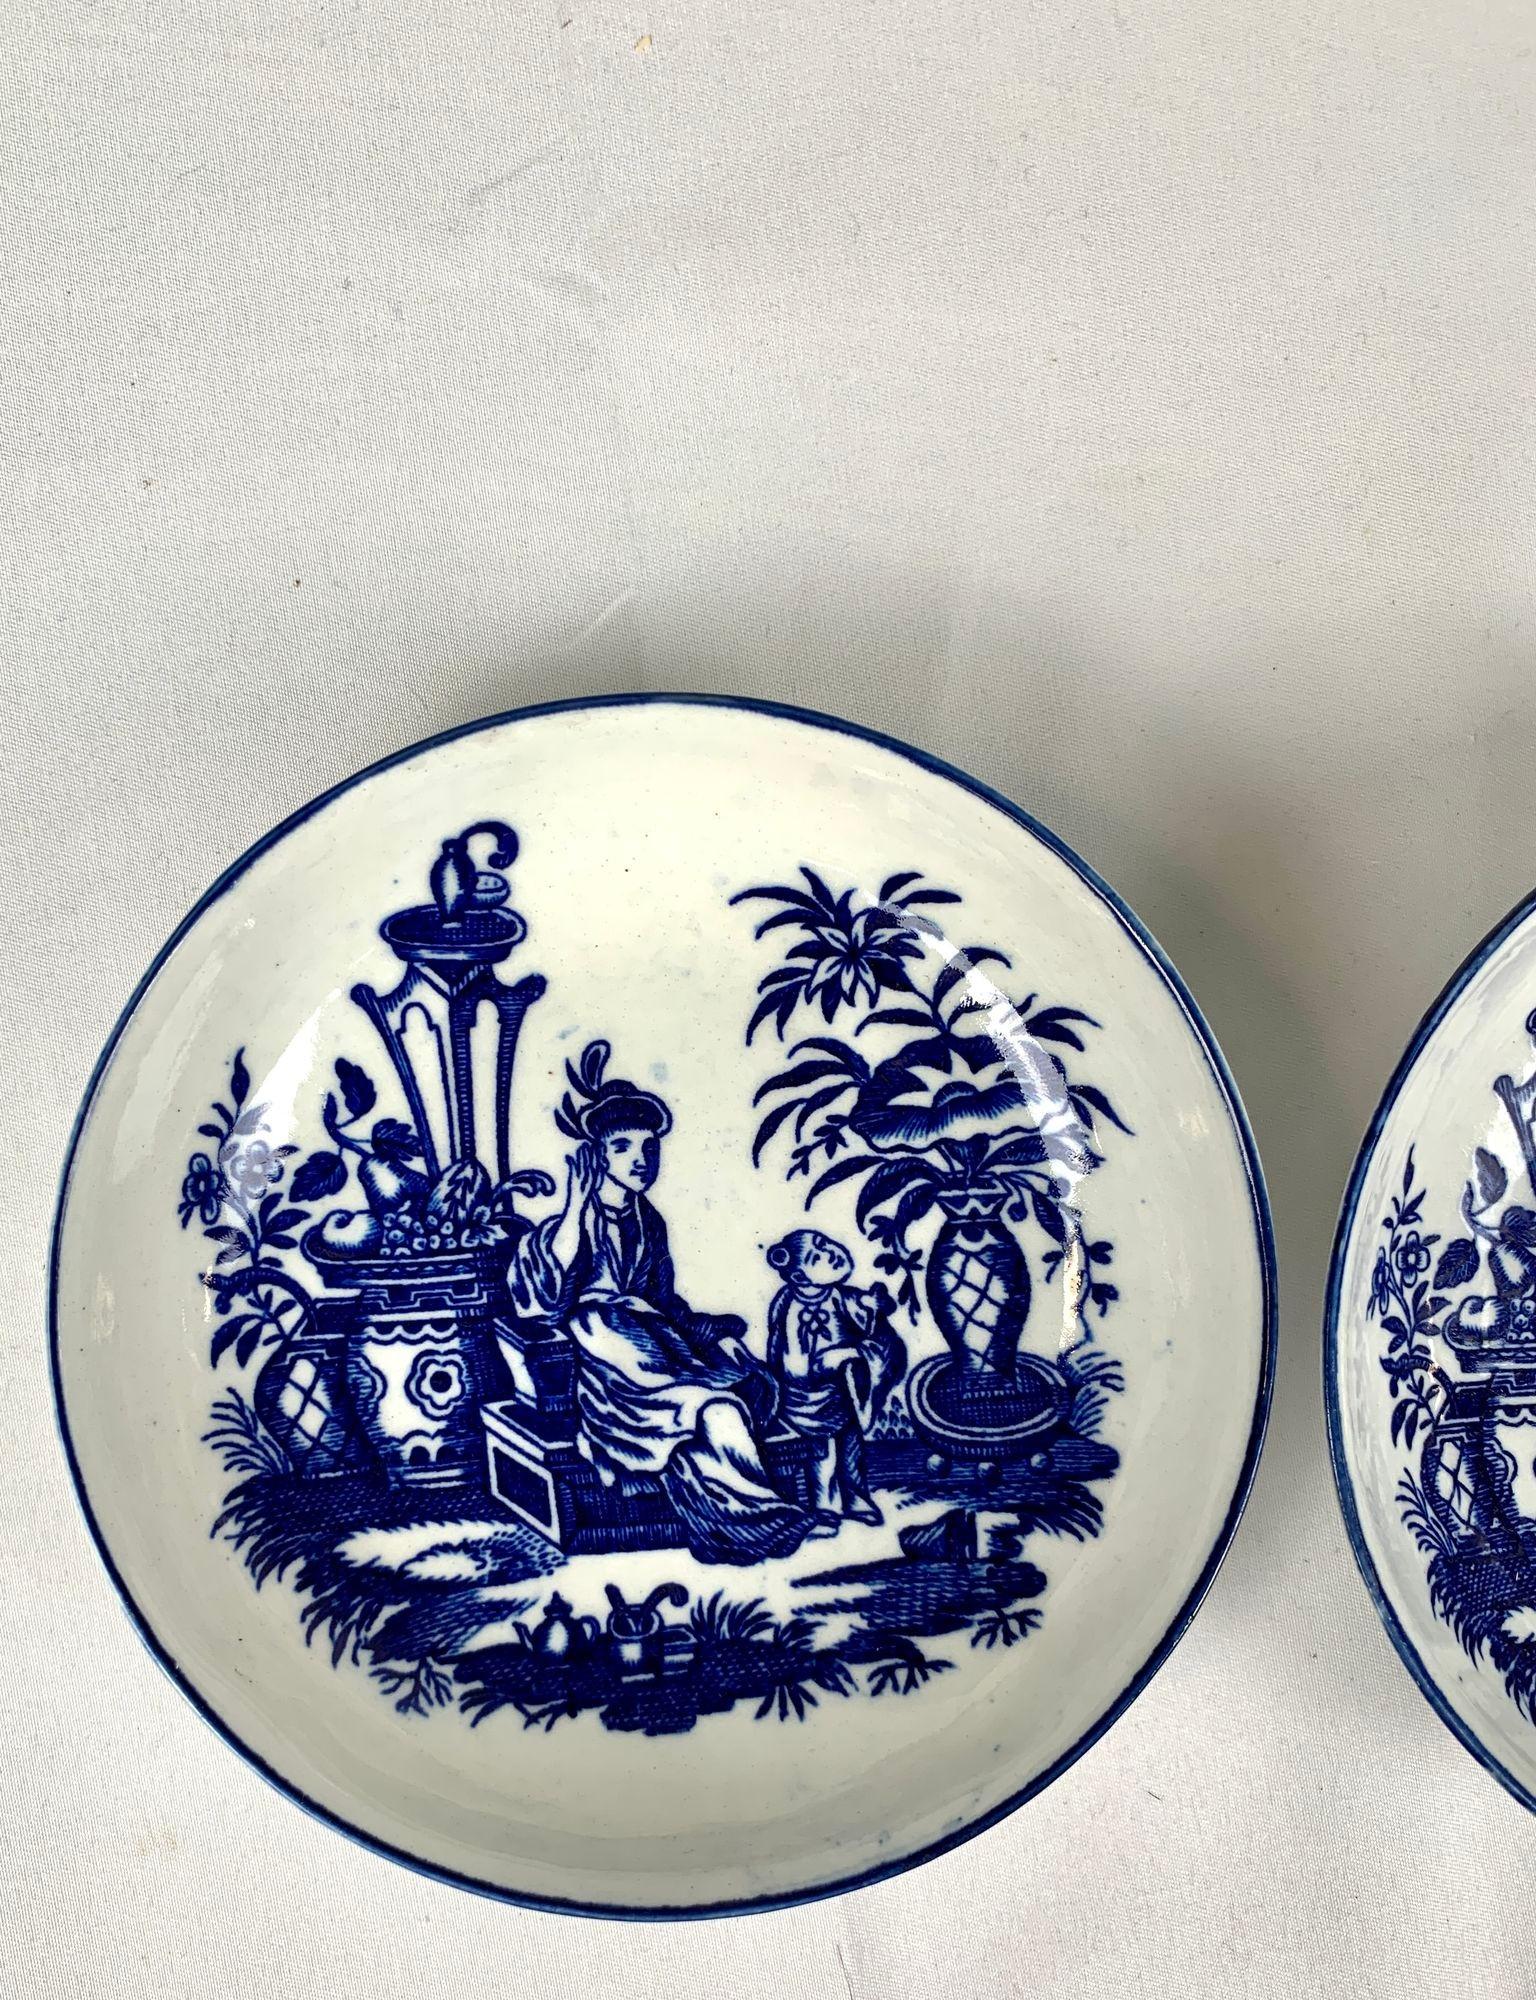 Dieses Paar blau-weißer Porzellanuntertassen wurde um 1785 von Caughley in England hergestellt.
Sie sind in Unterglasurblau gemalt und zeigen eine schöne Chinoiserie-Szene mit Mutter und Sohn in einem üppigen Garten mit blühenden Bäumen und mehreren